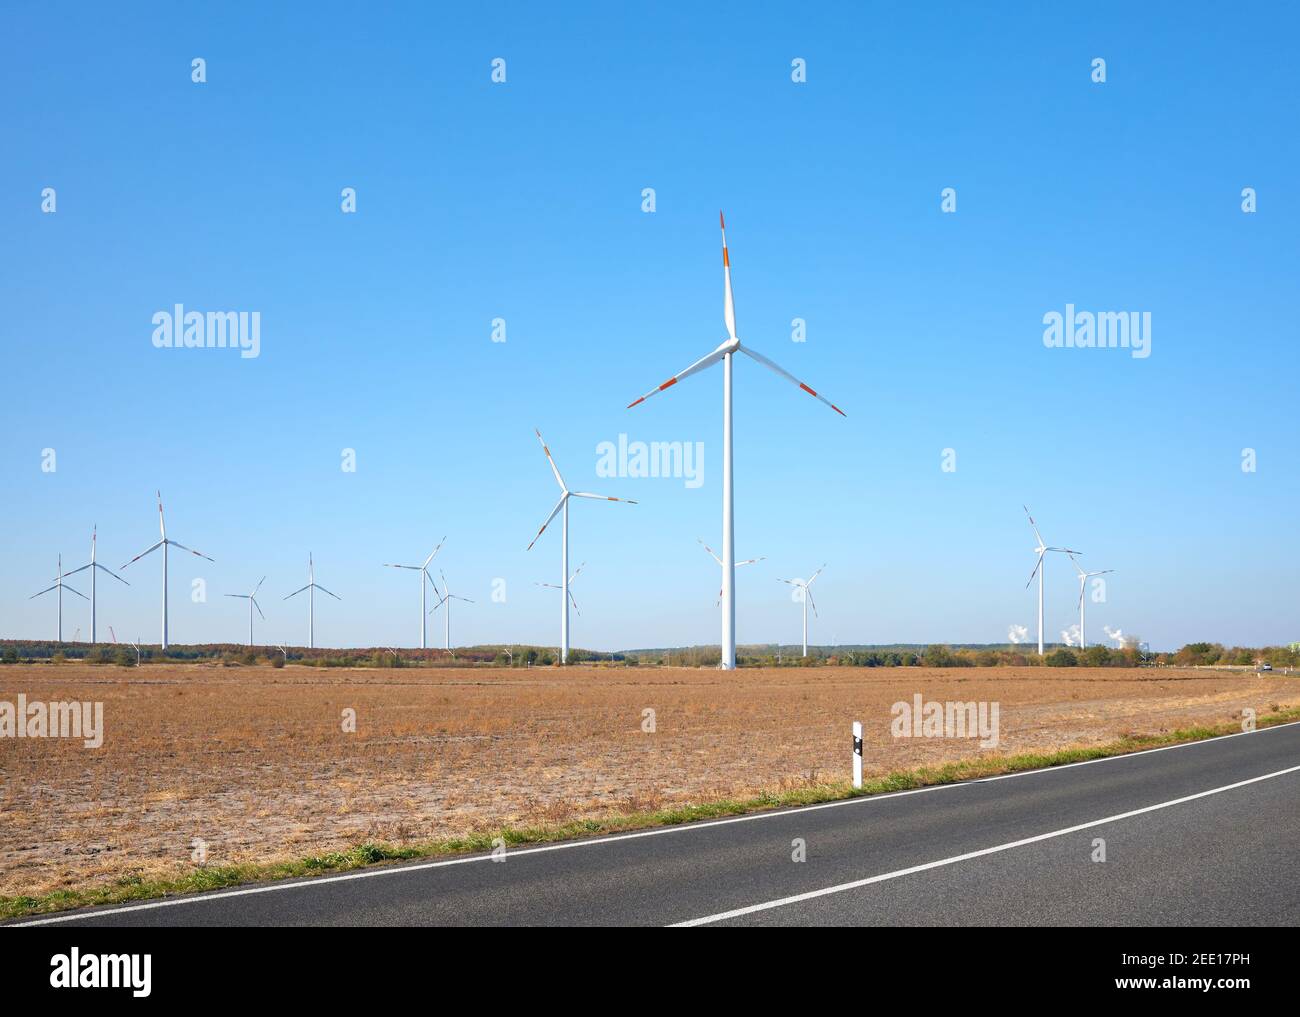 Bild von einem Windturbinenpark an einer Straße gegen den blauen Himmel. Stockfoto